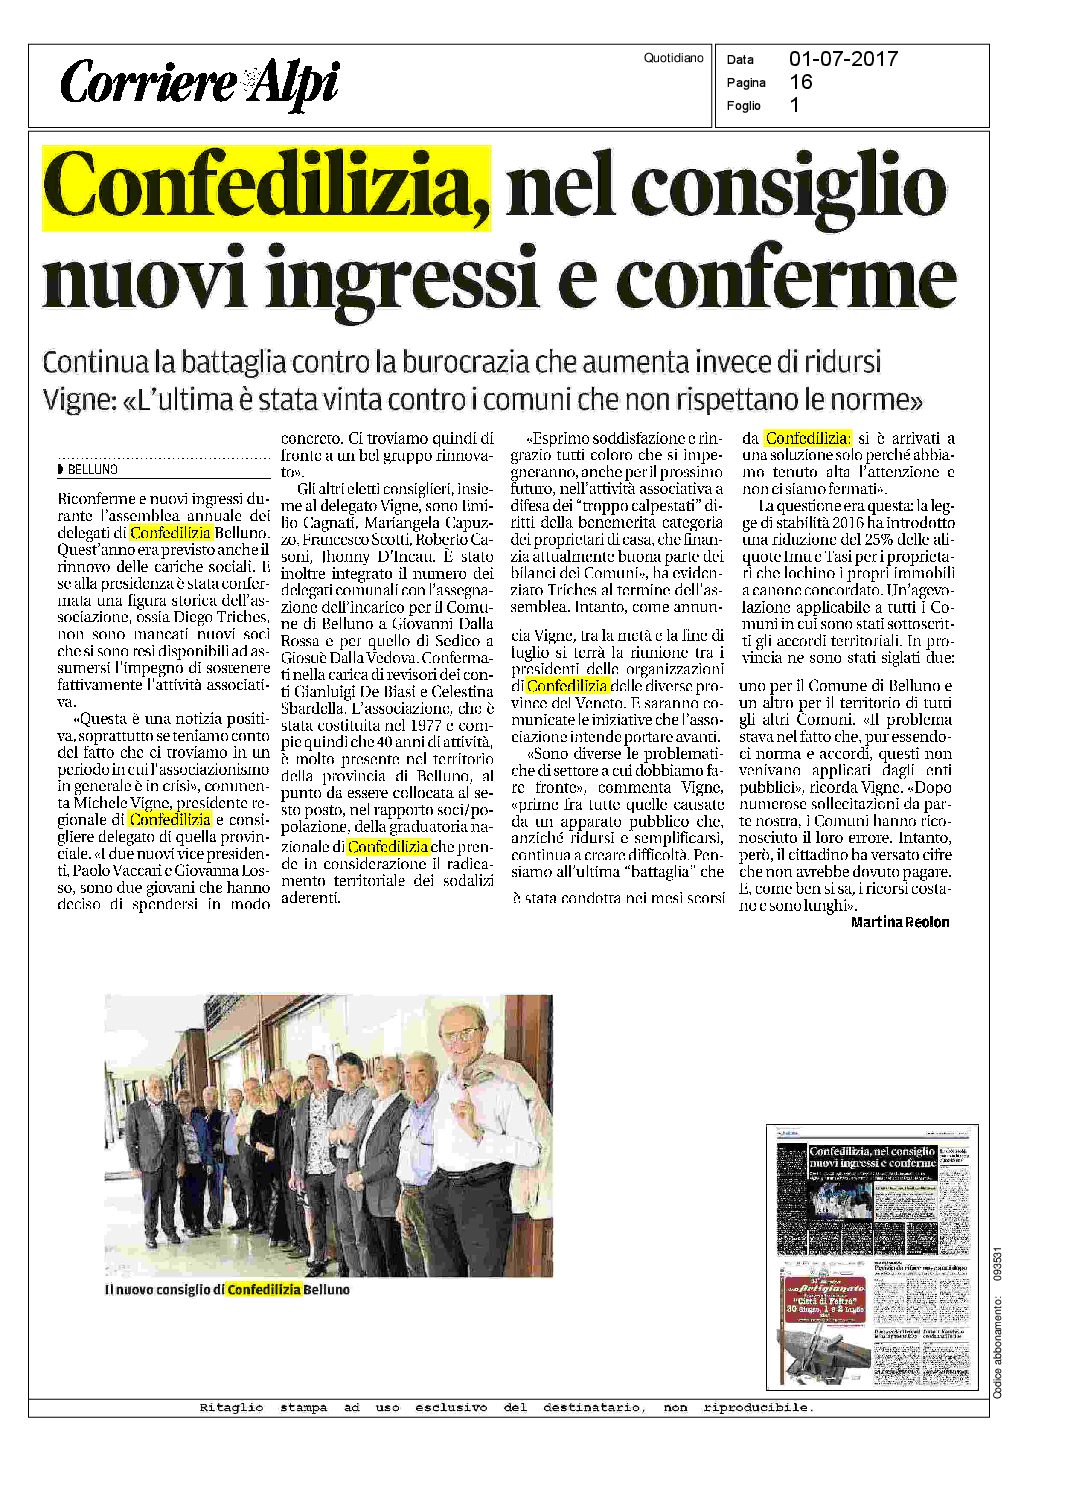 Corriere delle Alpi 01.07.2017